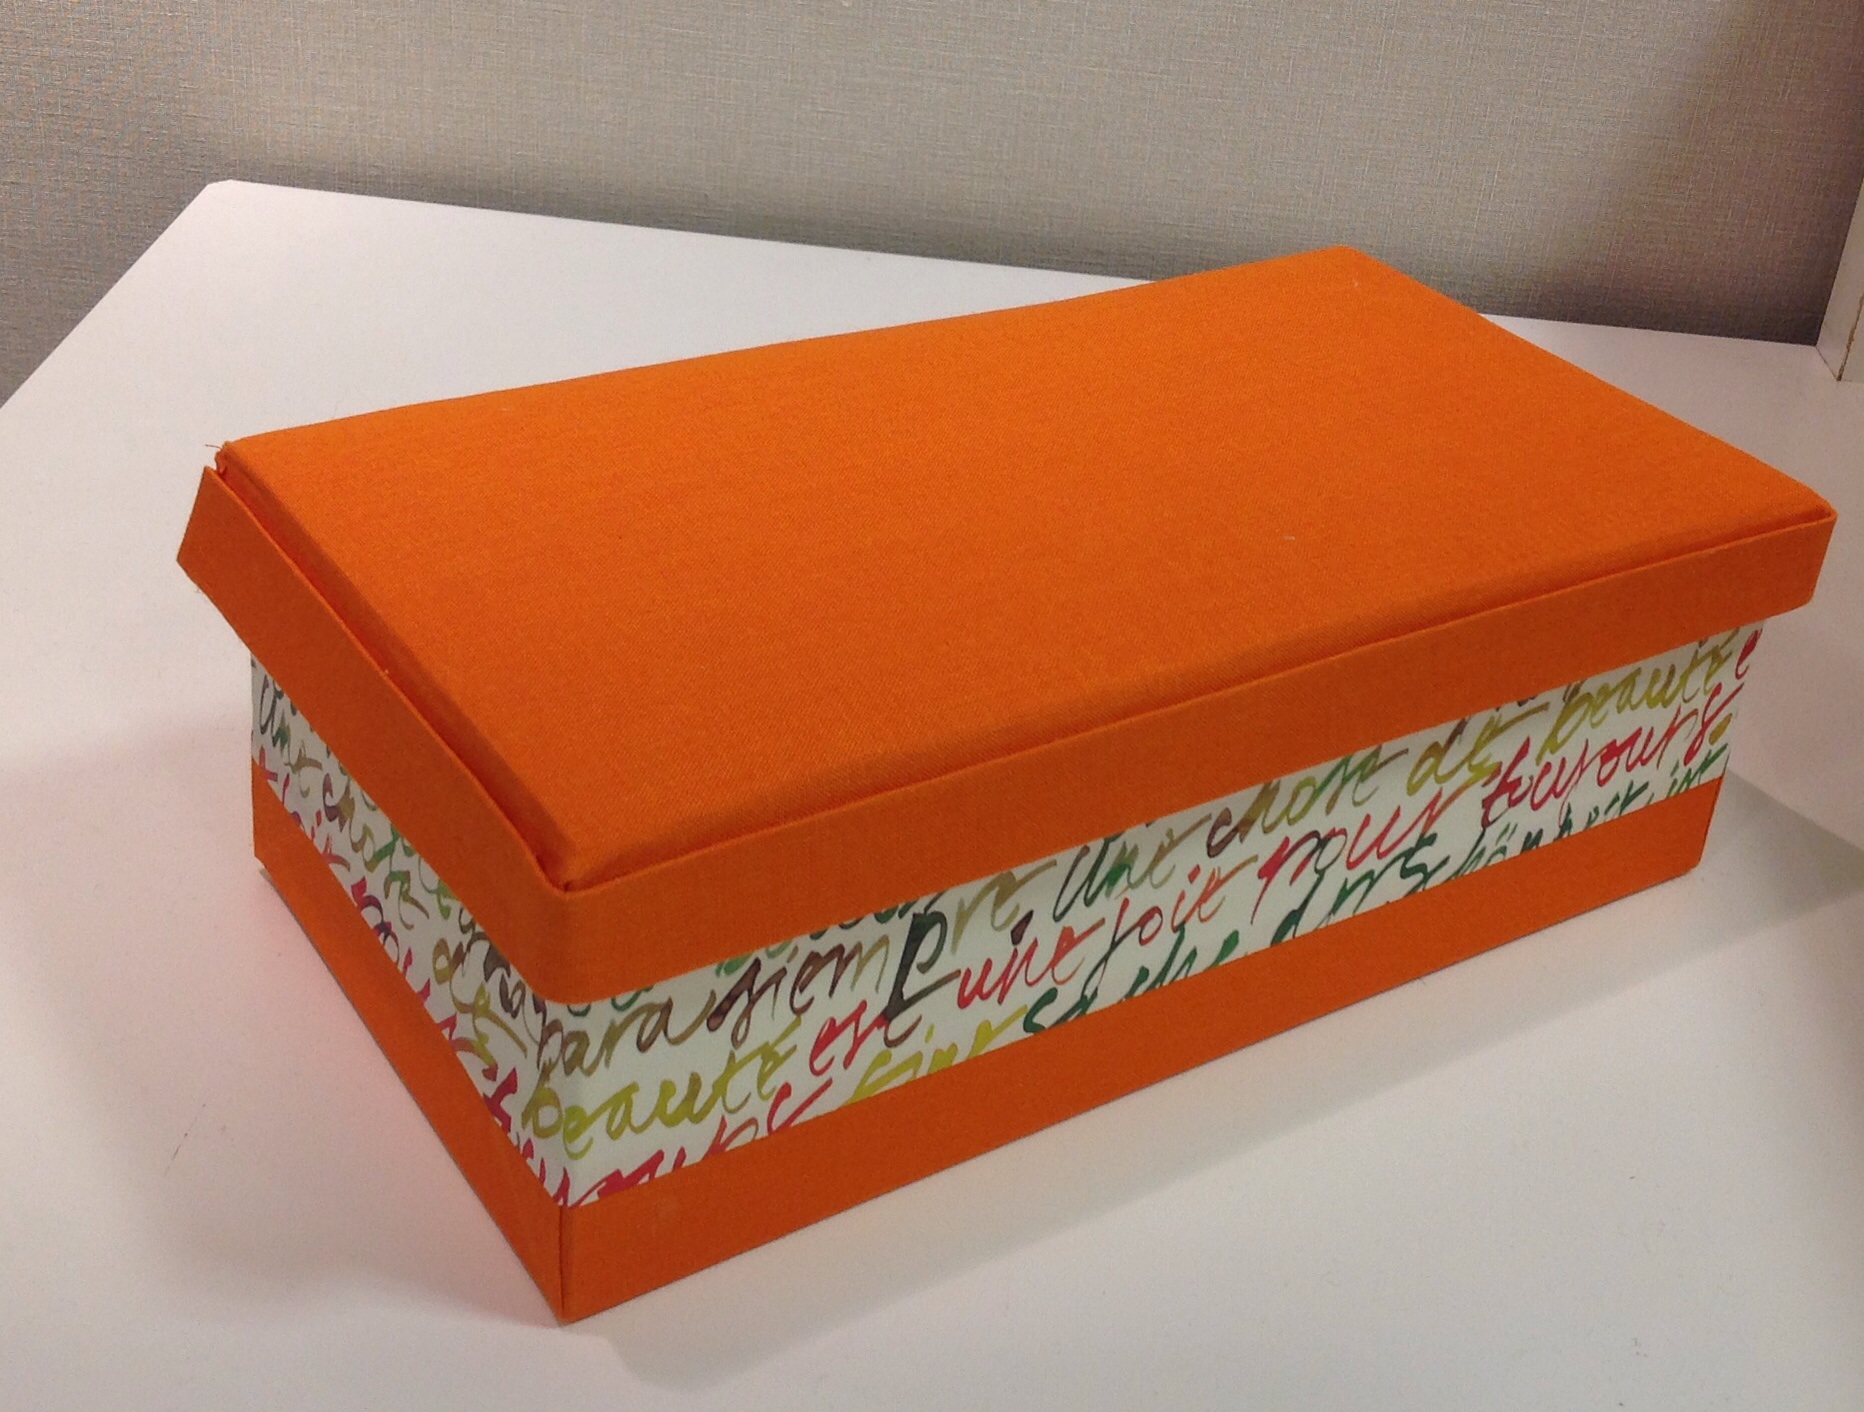 sewing box